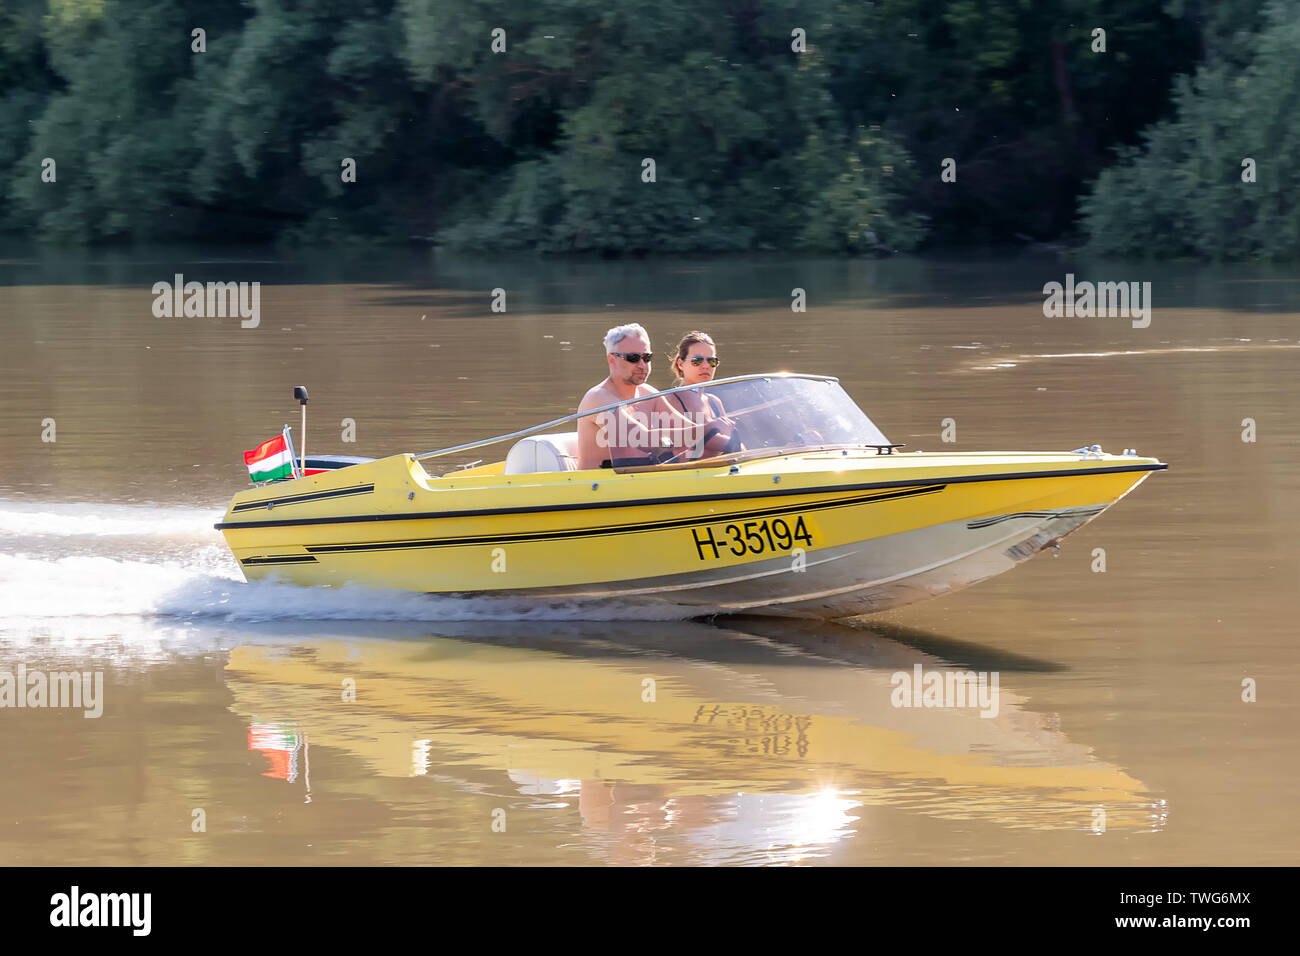 Speed motor boat on The Danube river Stock Photo